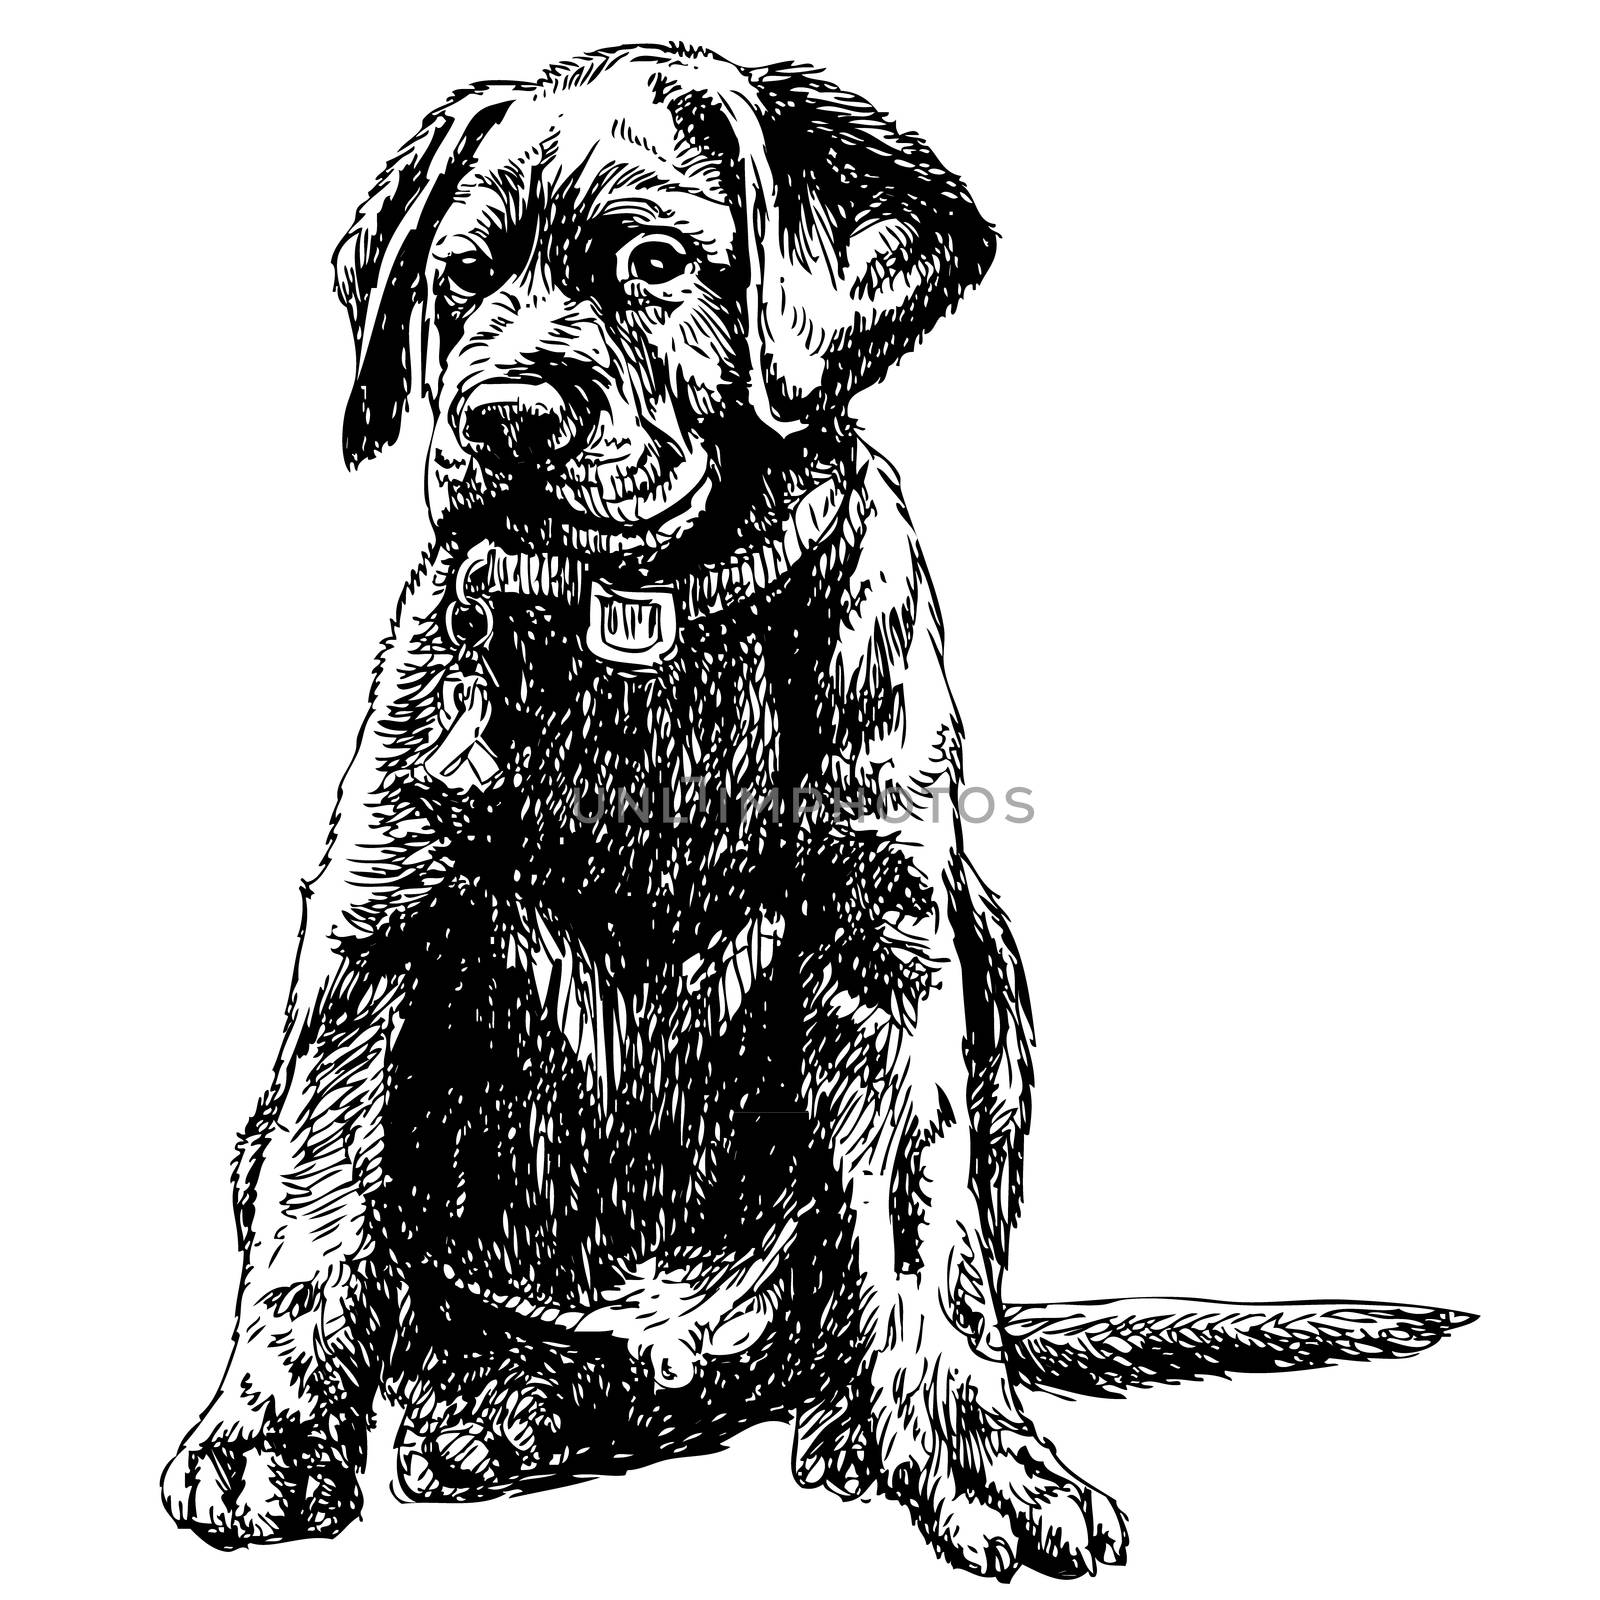 Image of Labrador Retriever hand drawn vector